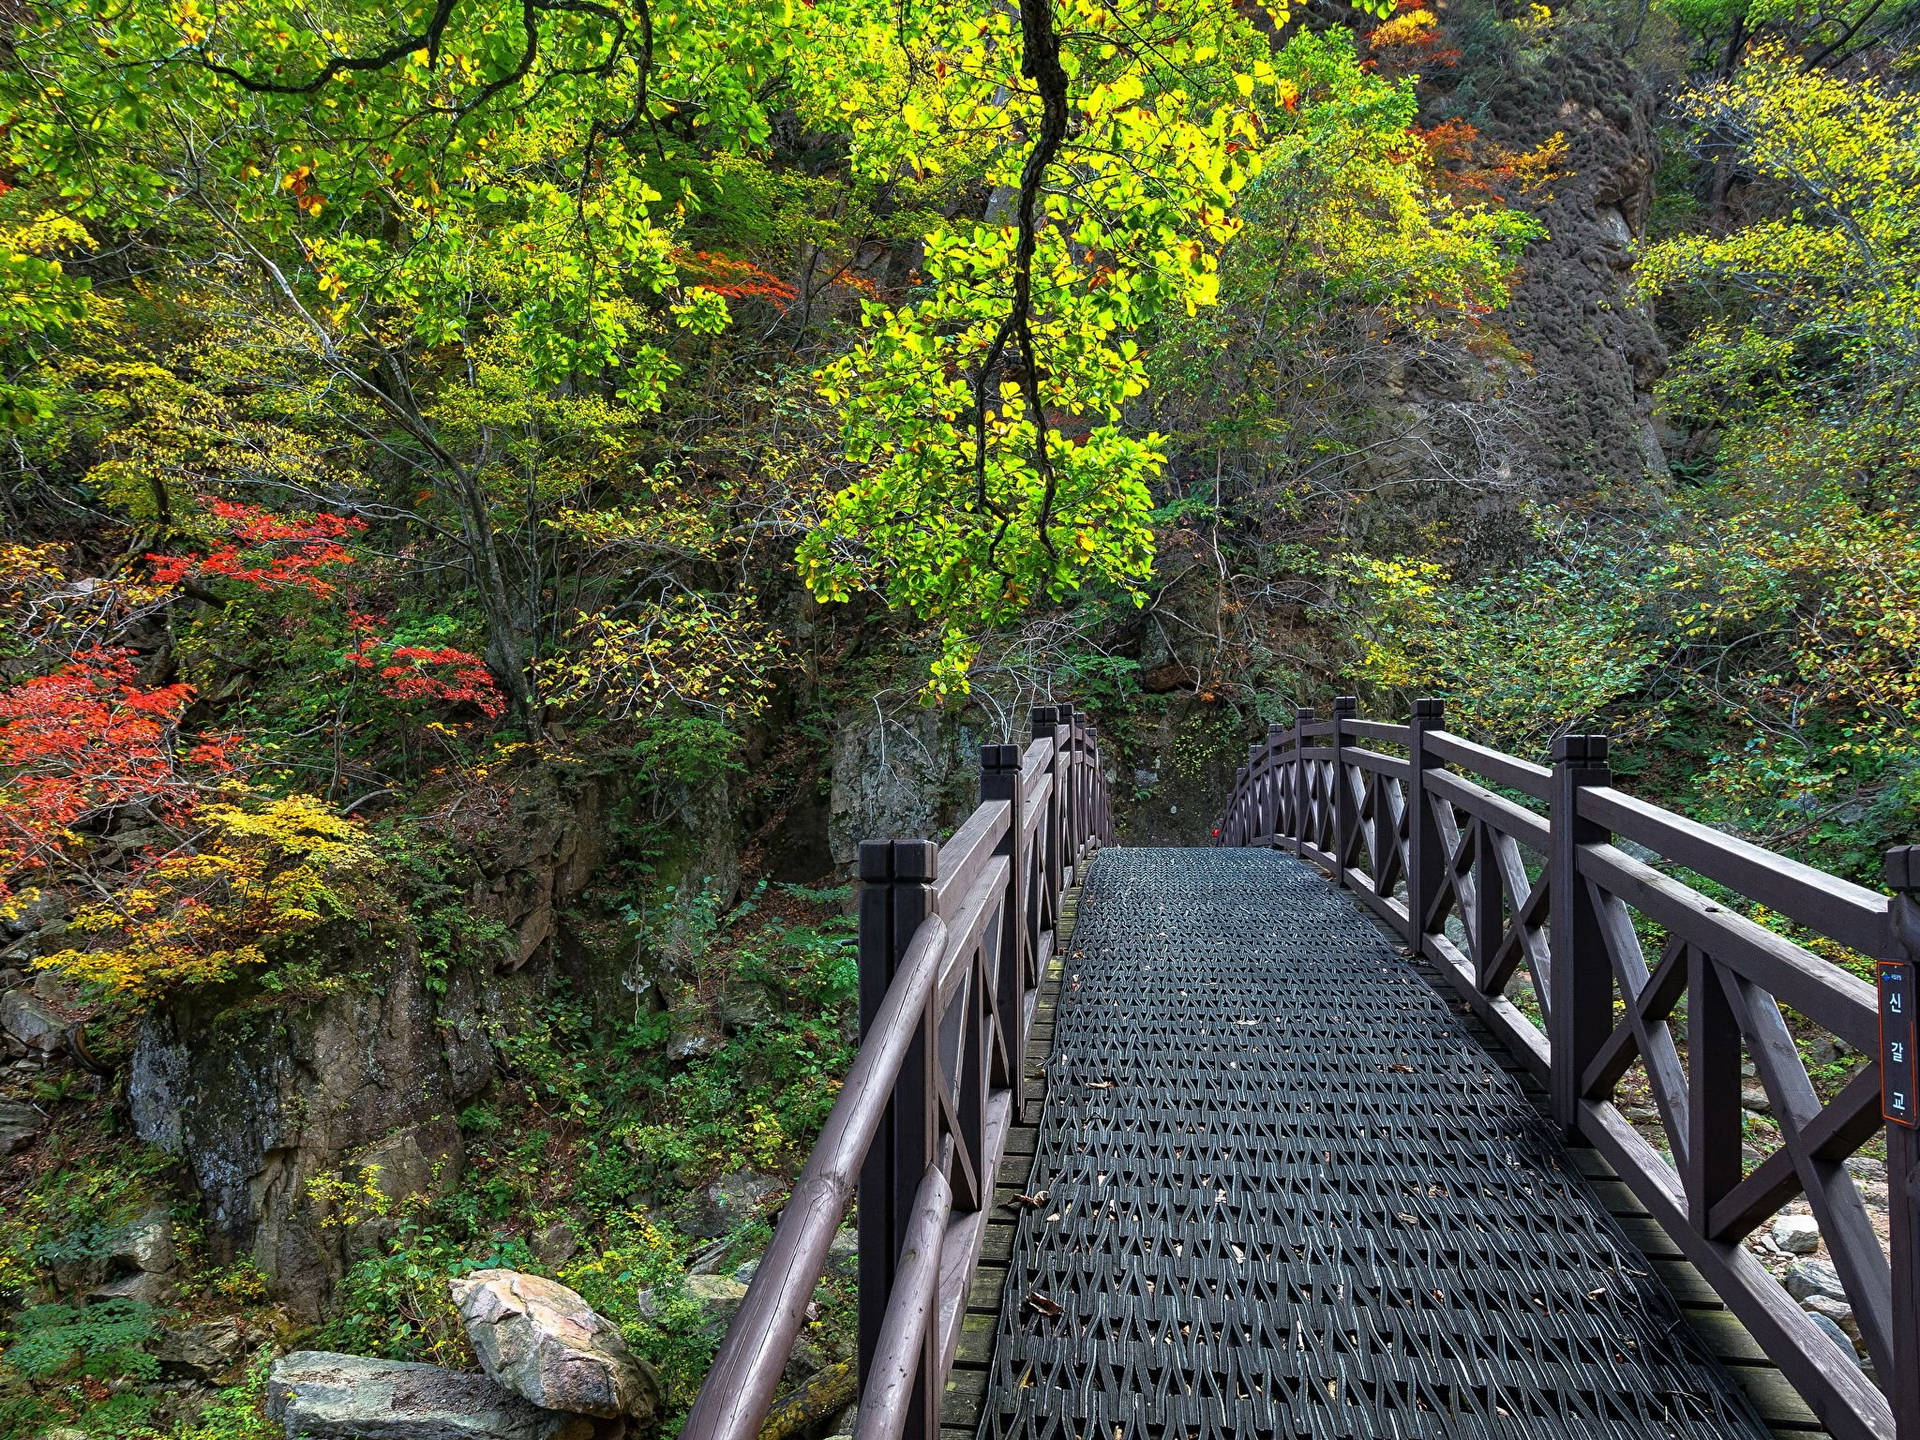 Với những rặng núi đá vôi hiện lên như hình ảnh trong phim võ thuật và động thực vật dồi dào, Vườn quốc gia Seoraksan là một trong những nơi tham quan đẹp nhất của Hàn Quốc. Hãy truy cập trang web của chúng tôi để cảm nhận sự đẹp đẽ của vườn quốc gia Seoraksan.